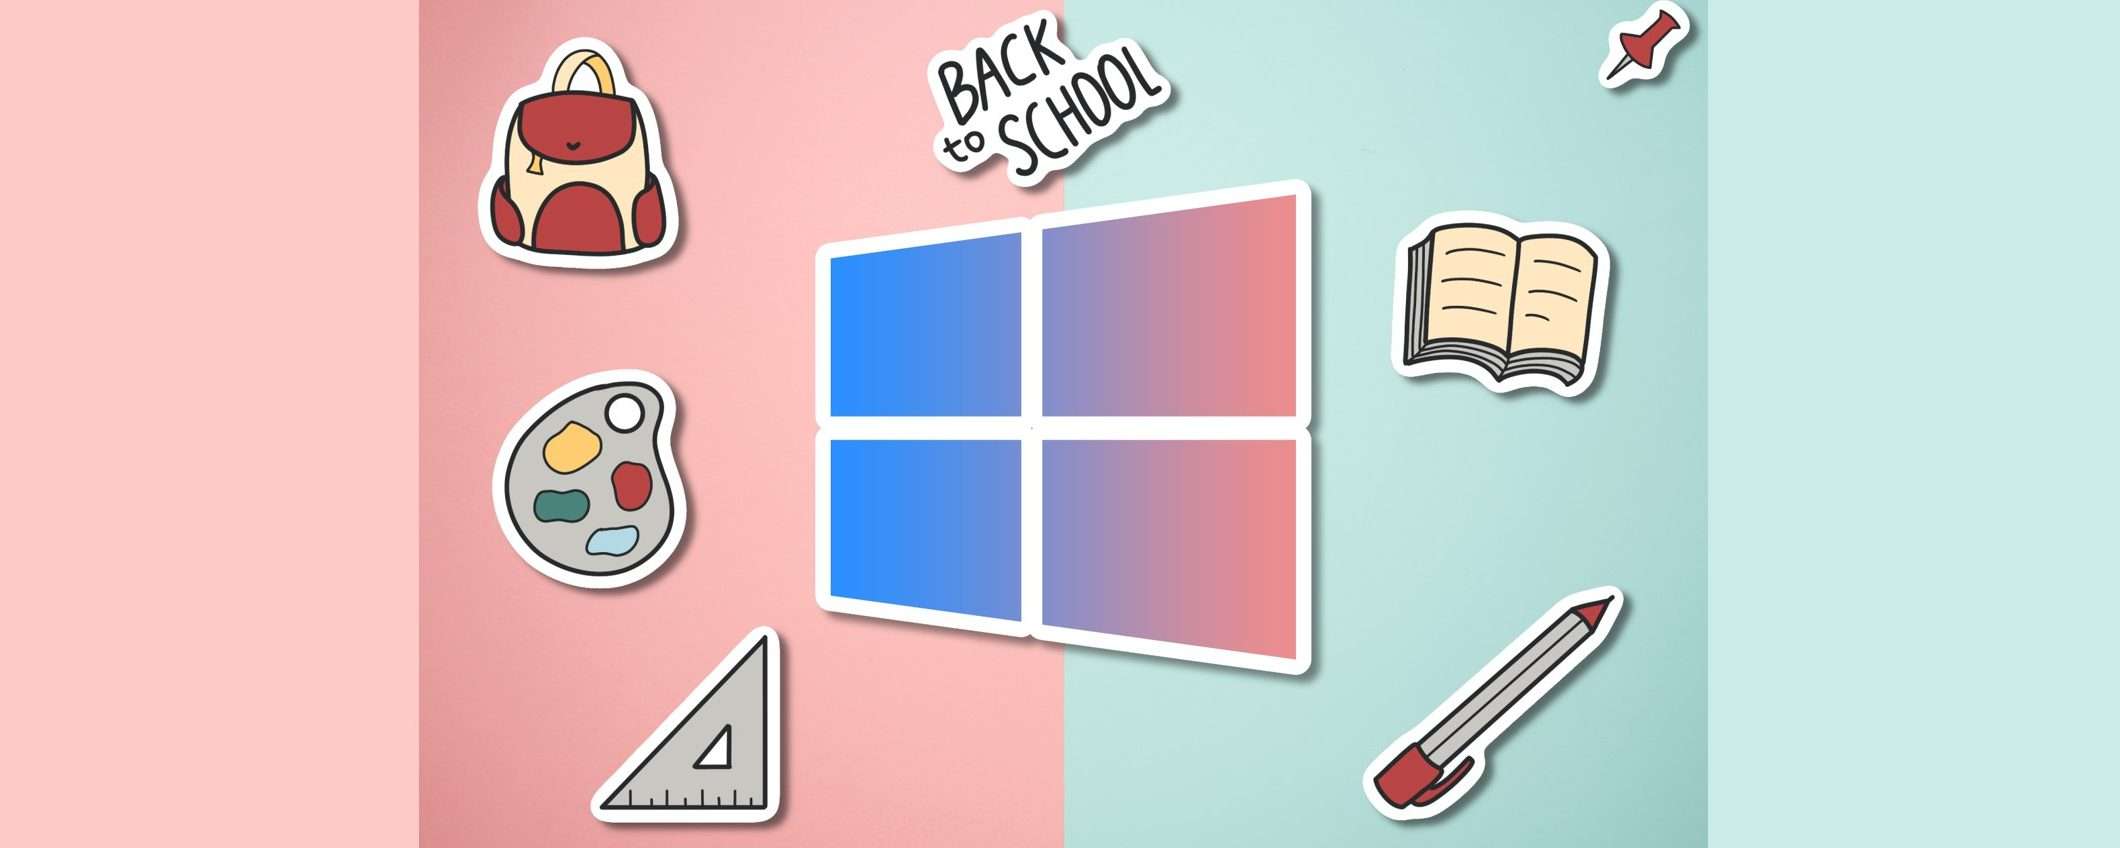 Licenza Microsoft Windows 10 per 12€, Office 22€: sconti Back to School!